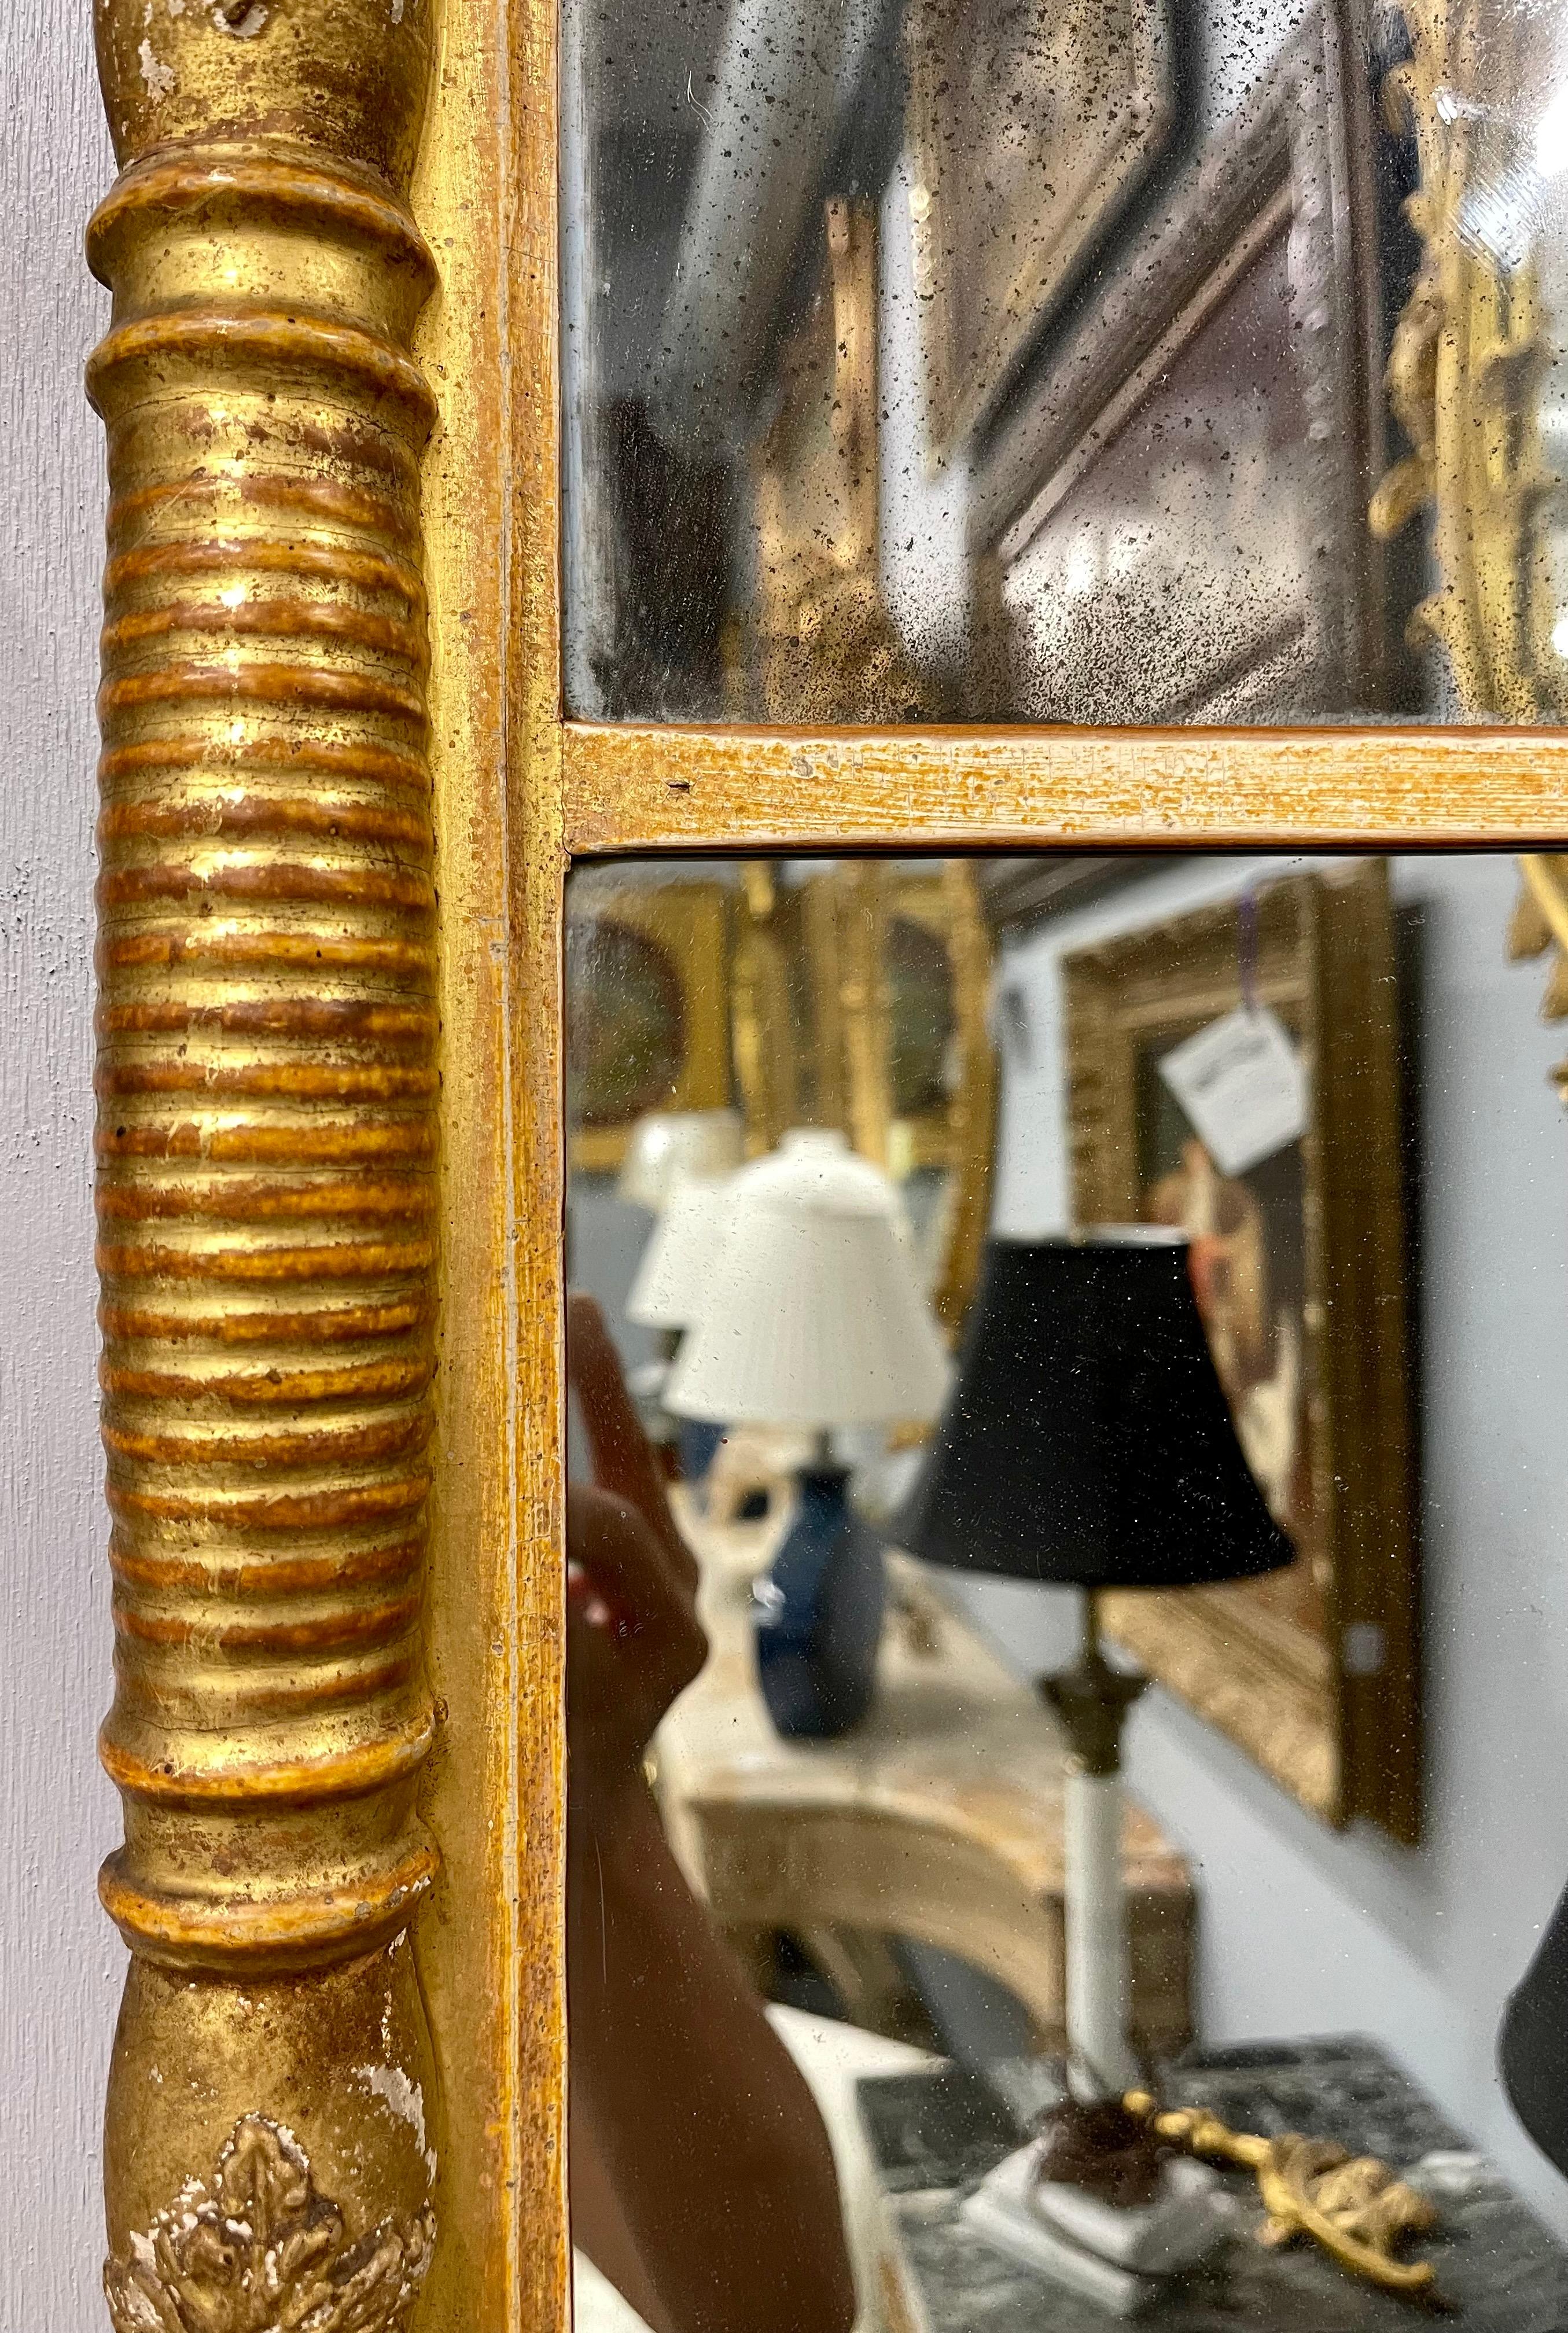 wand- oder Tischspiegel im Empire-Stil des 19. Jahrhunderts. Der zweiteilige Spiegel hat einen vergoldeten Rahmen im Empire-Design mit vollständig geschnitzten Stützen, die in einem geformten Oberteil mit einem unteren kreisförmigen Kugeldesign